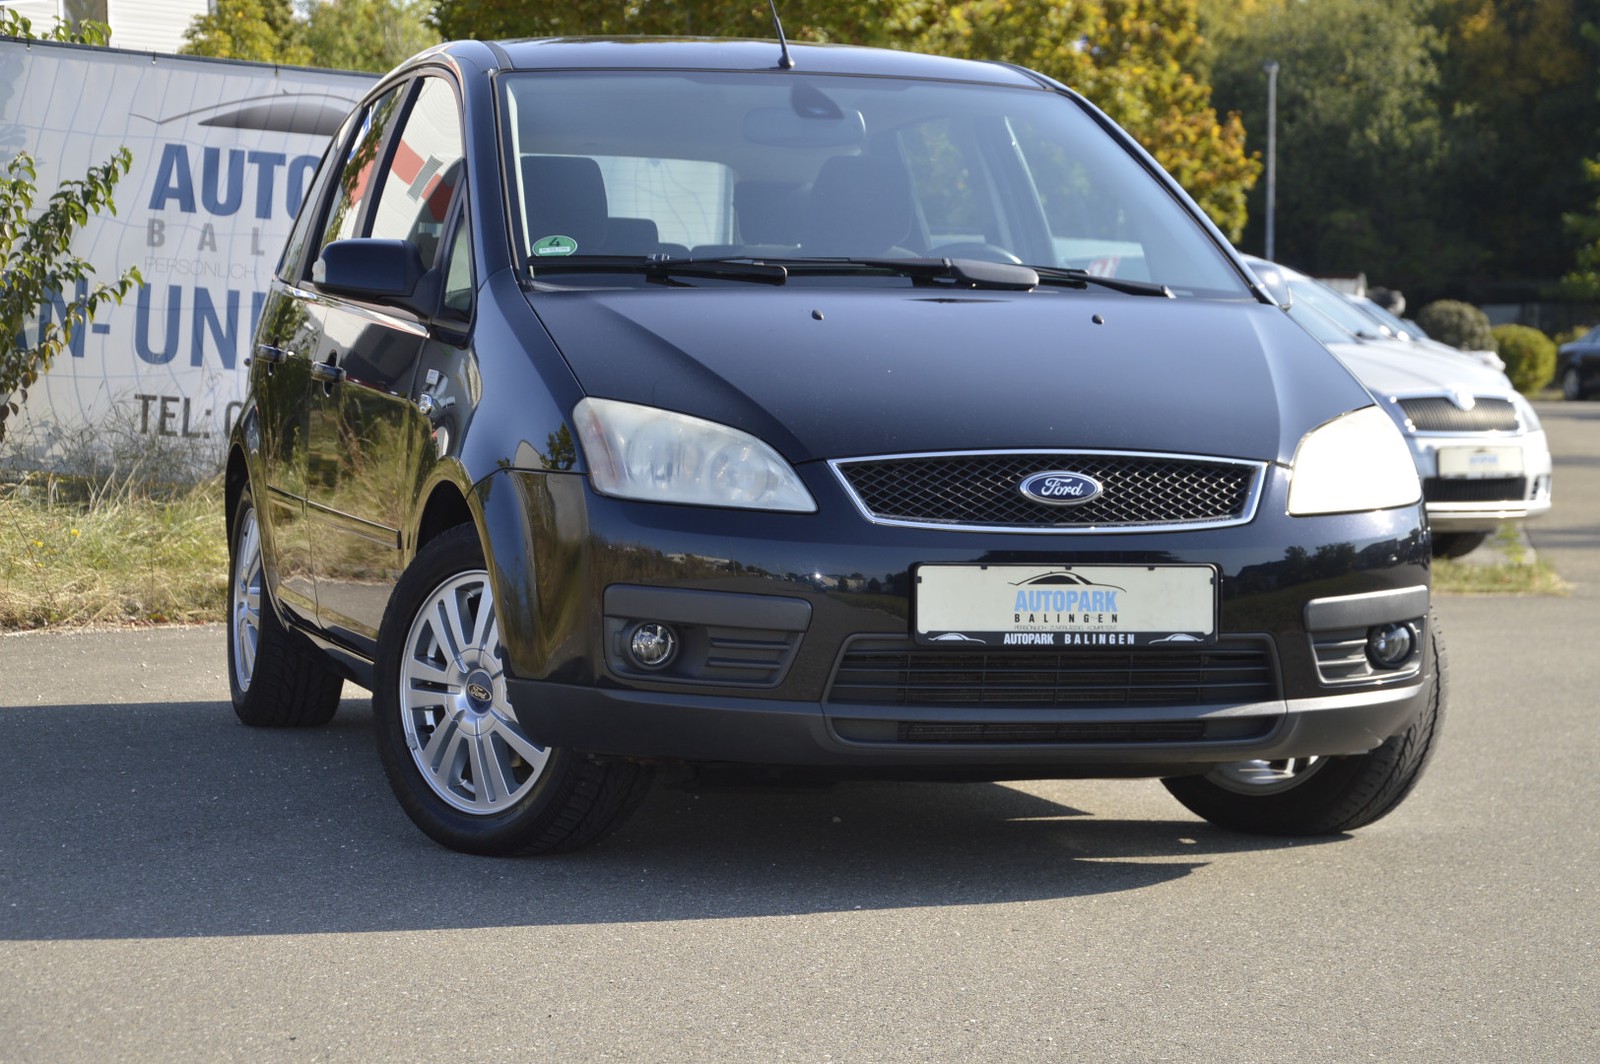 Ford Focus CMAX Ghia gebraucht kaufen in Balingen Preis